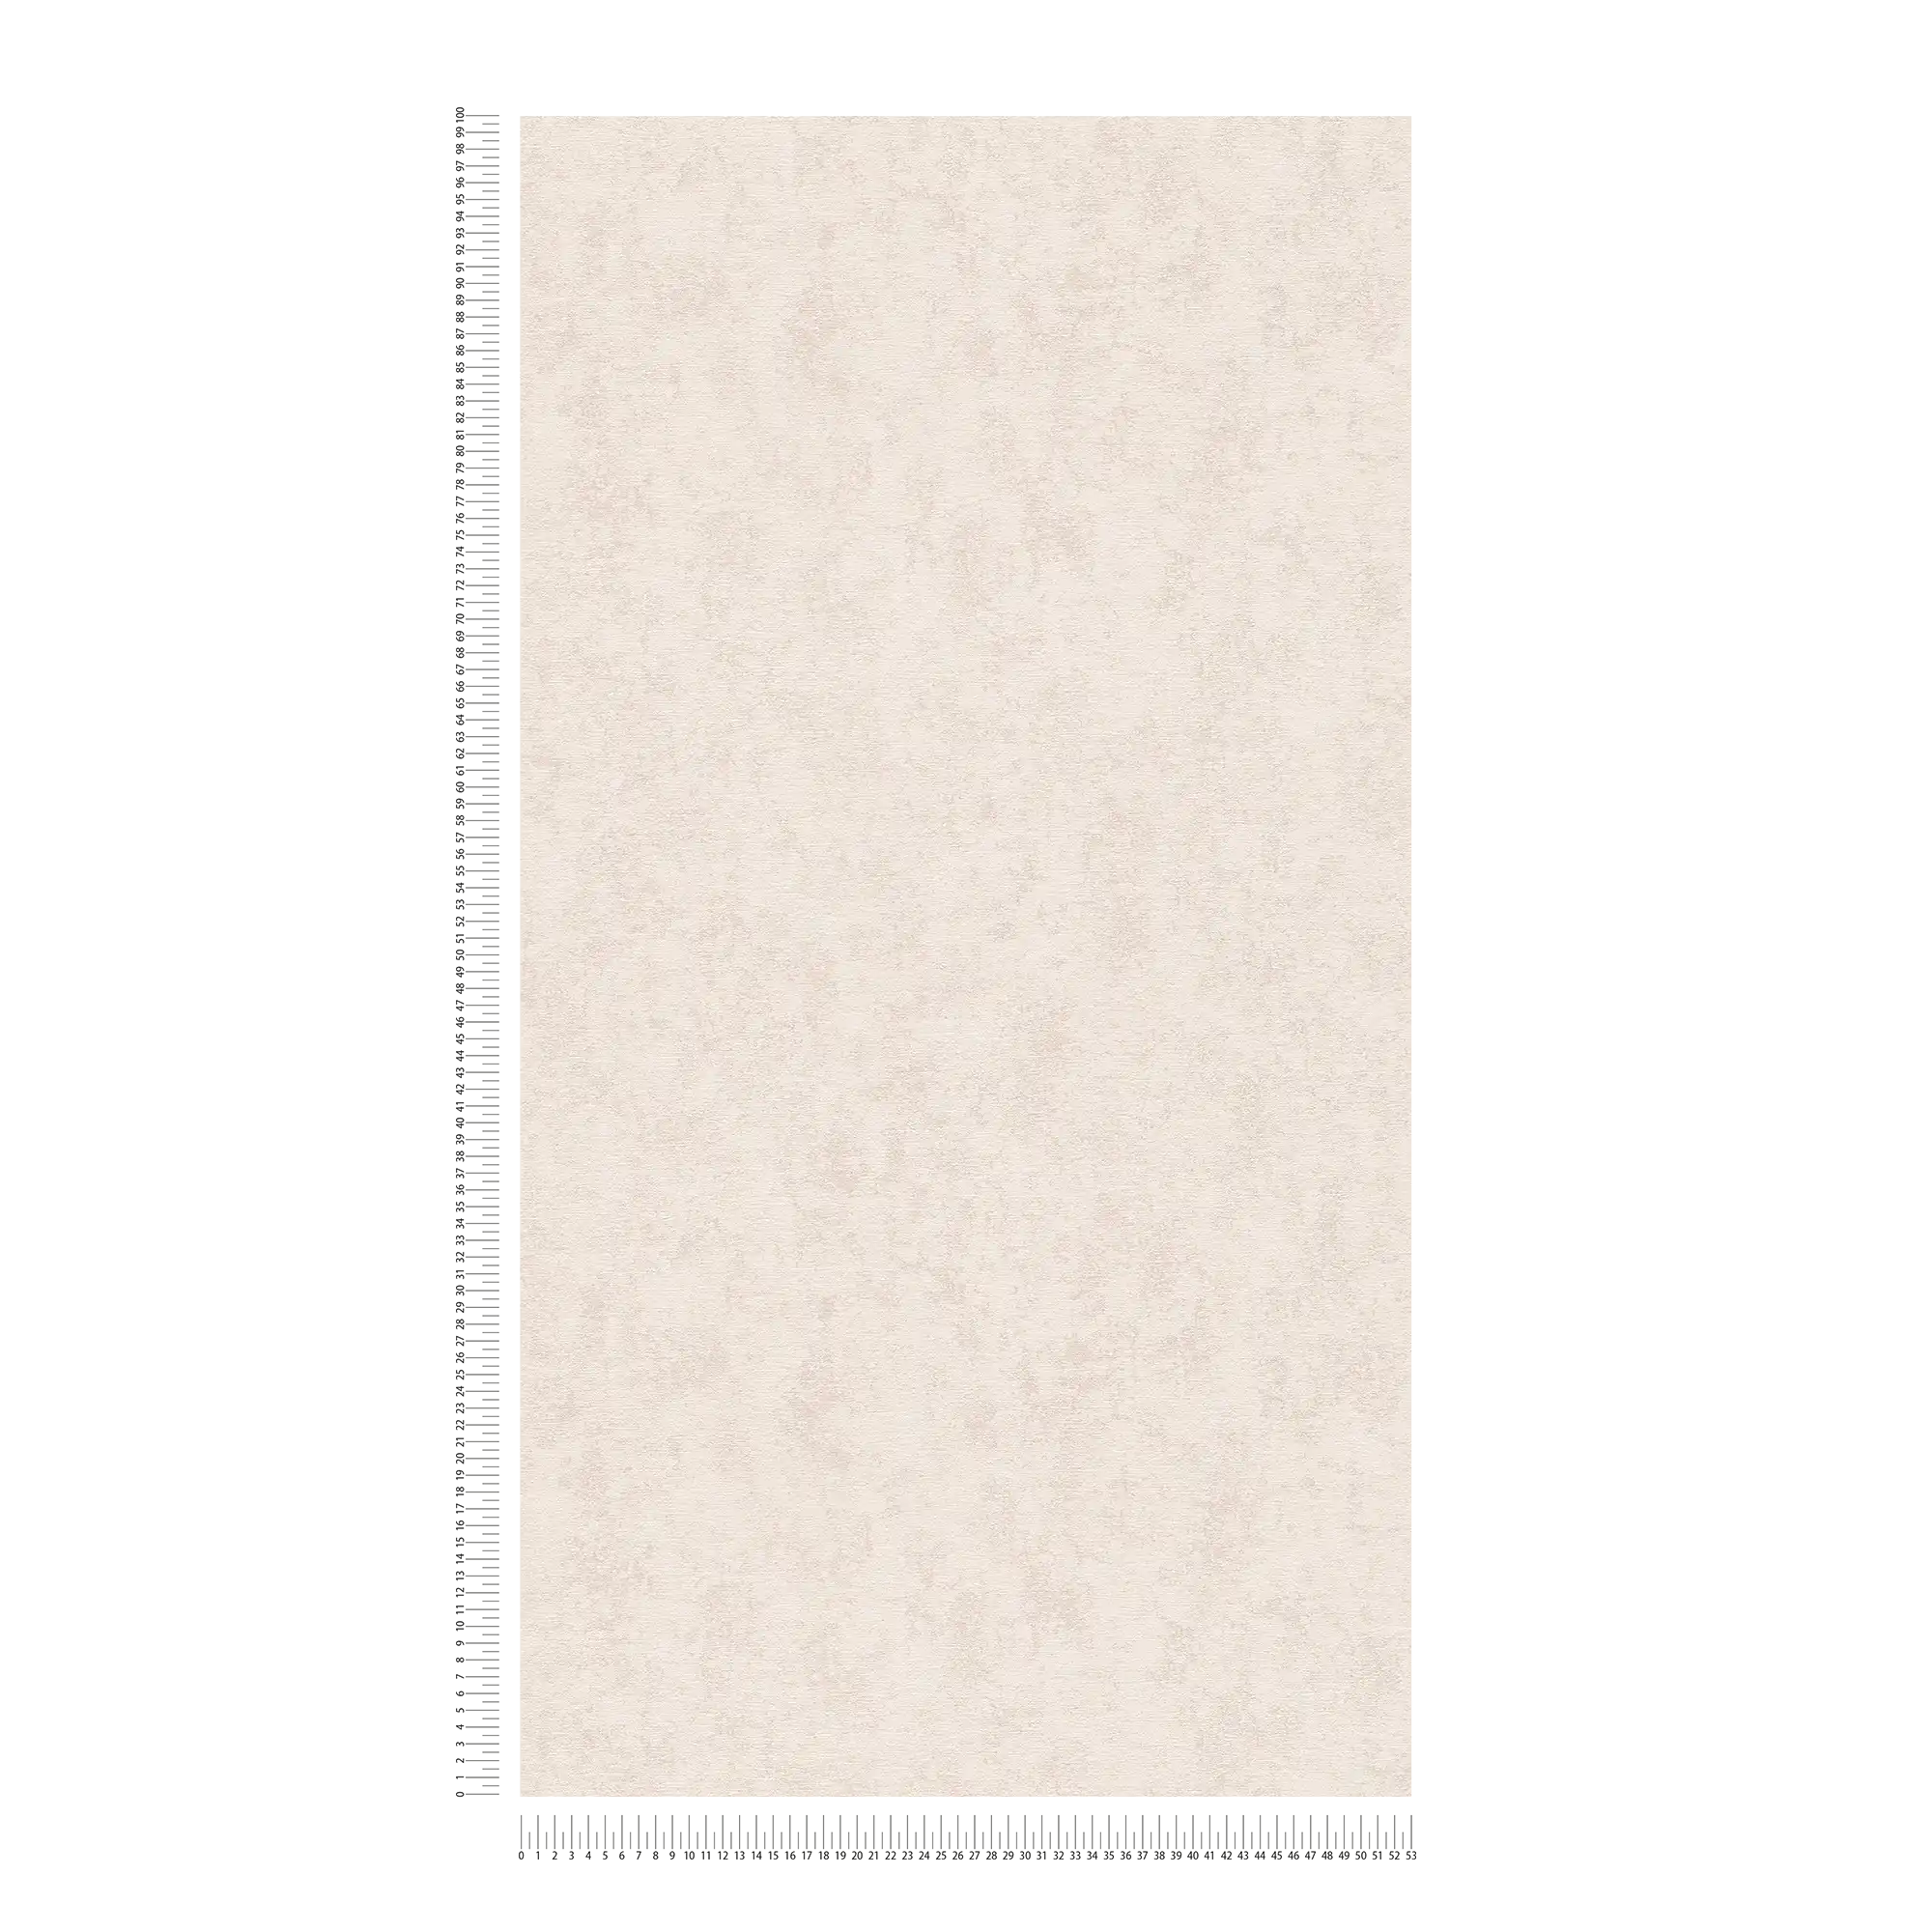             Papel pintado óptico de yeso beige claro en estilo escandinavo - beige, gris
        